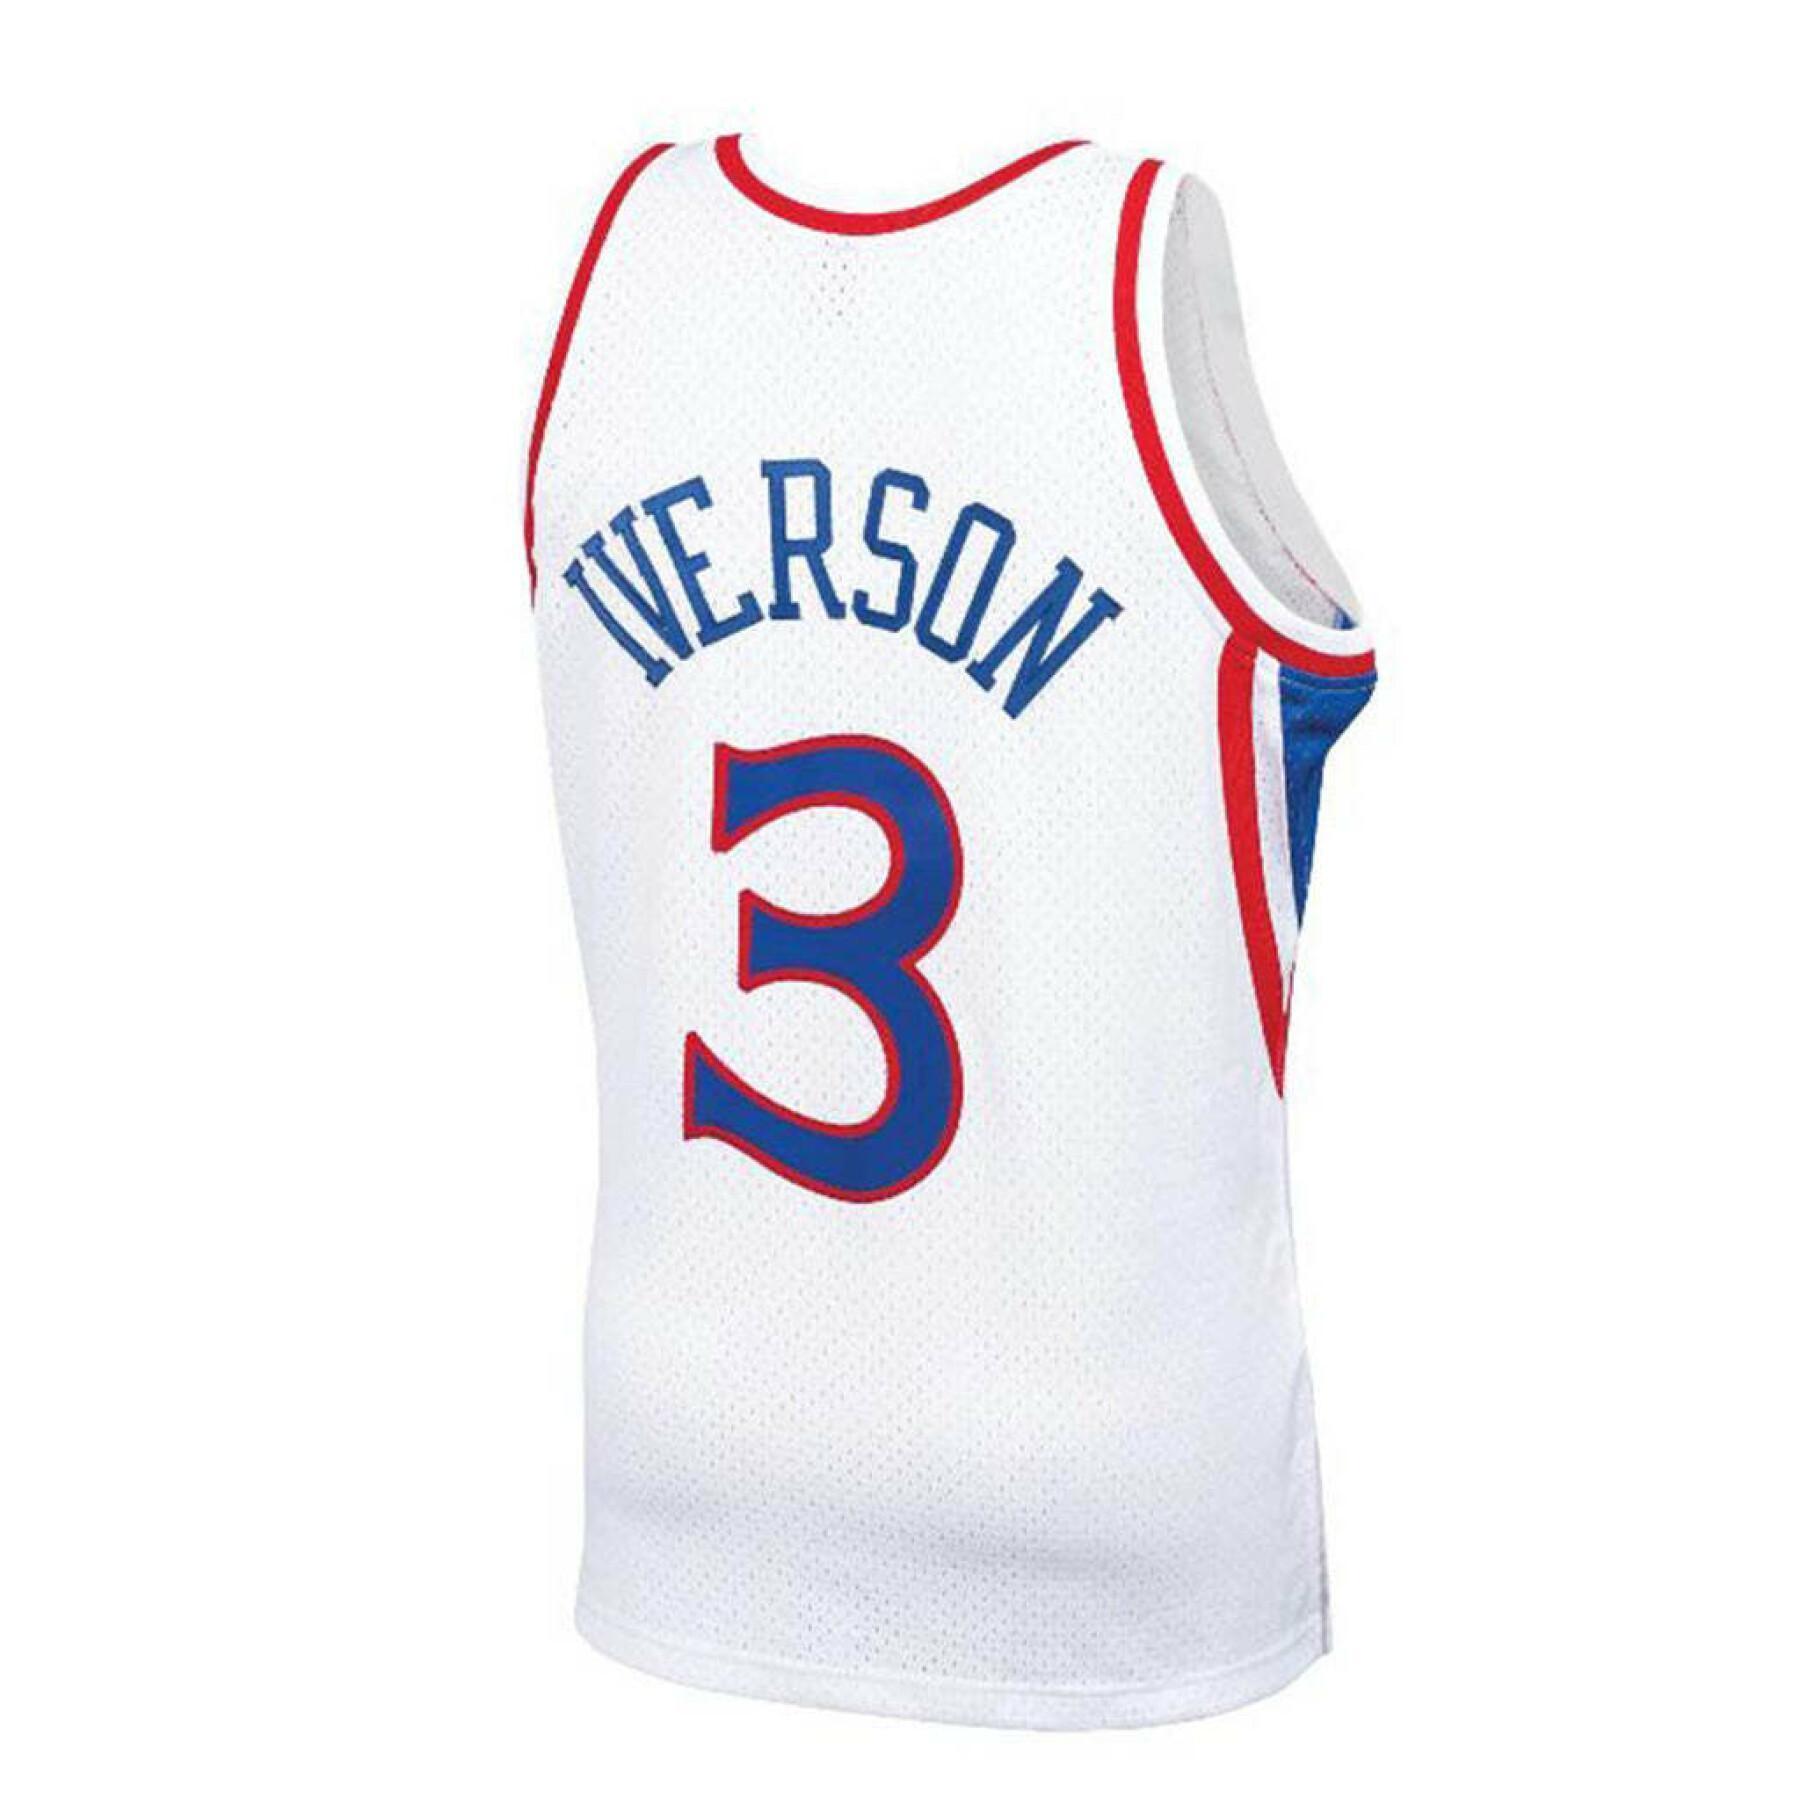 Thuisshirt Philadelphia 76ers nba authentic Allen Iverson